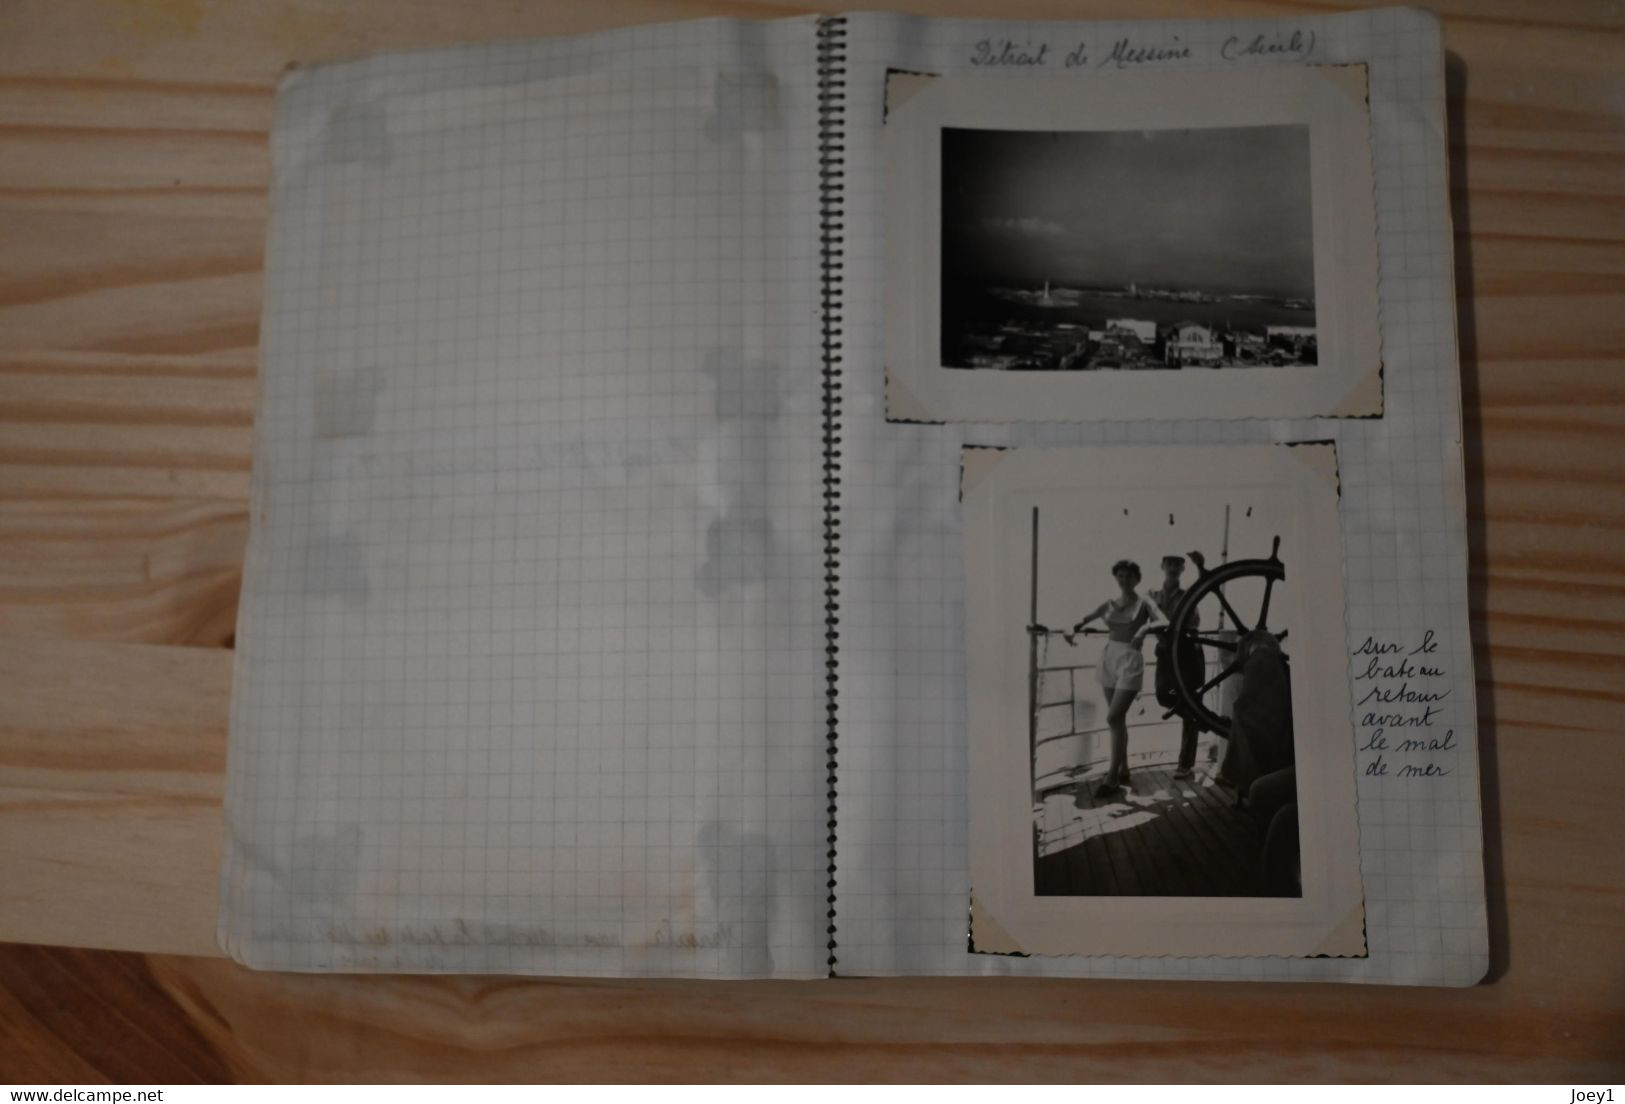 Carnet photos et cartes postales, vacances 1954,Voyage en Italie